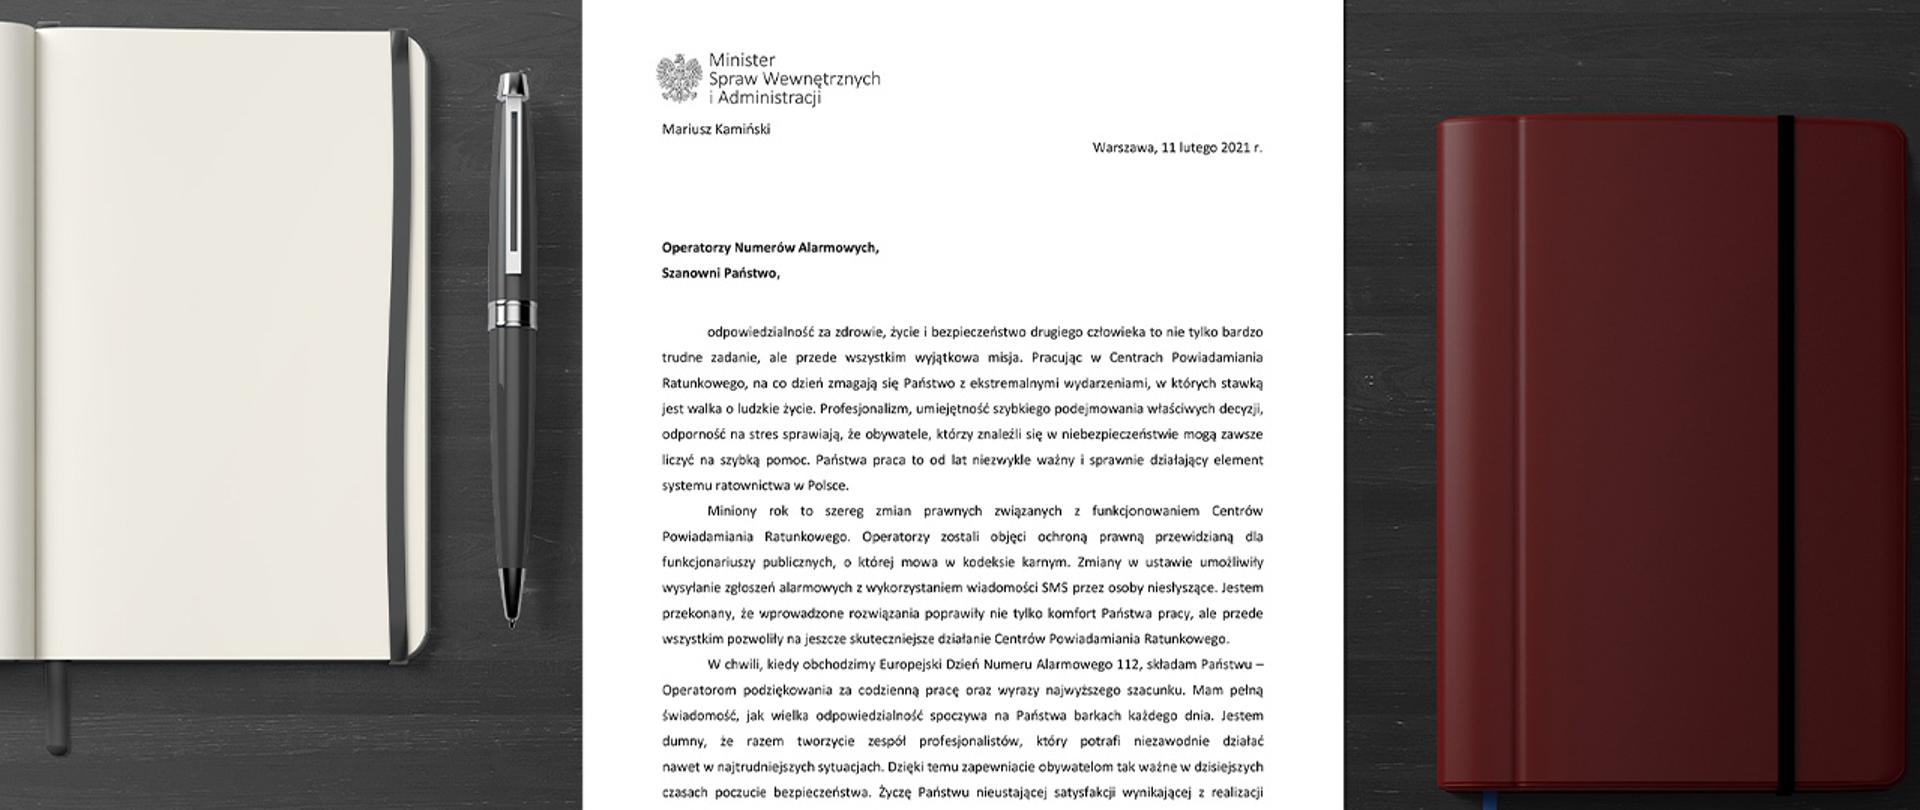 Podziękowania ministra Mariusza Kamińskiego dla pracowników Centrów Powiadamiania Ratunkowego z okazji Europejskiego Dnia Numeru Alarmowego 112